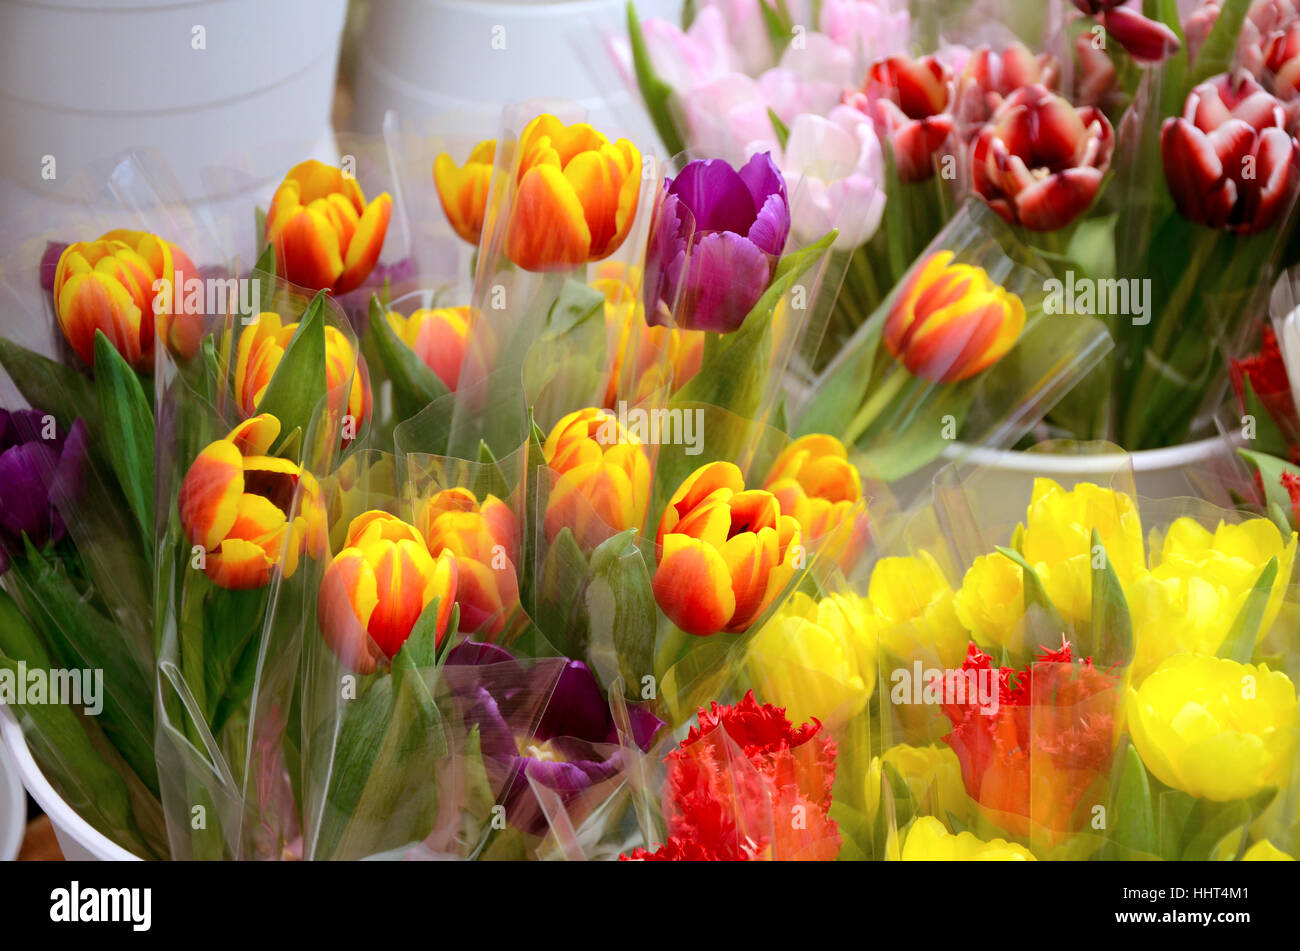 Fancy tulip in flower shop. Stock Photo